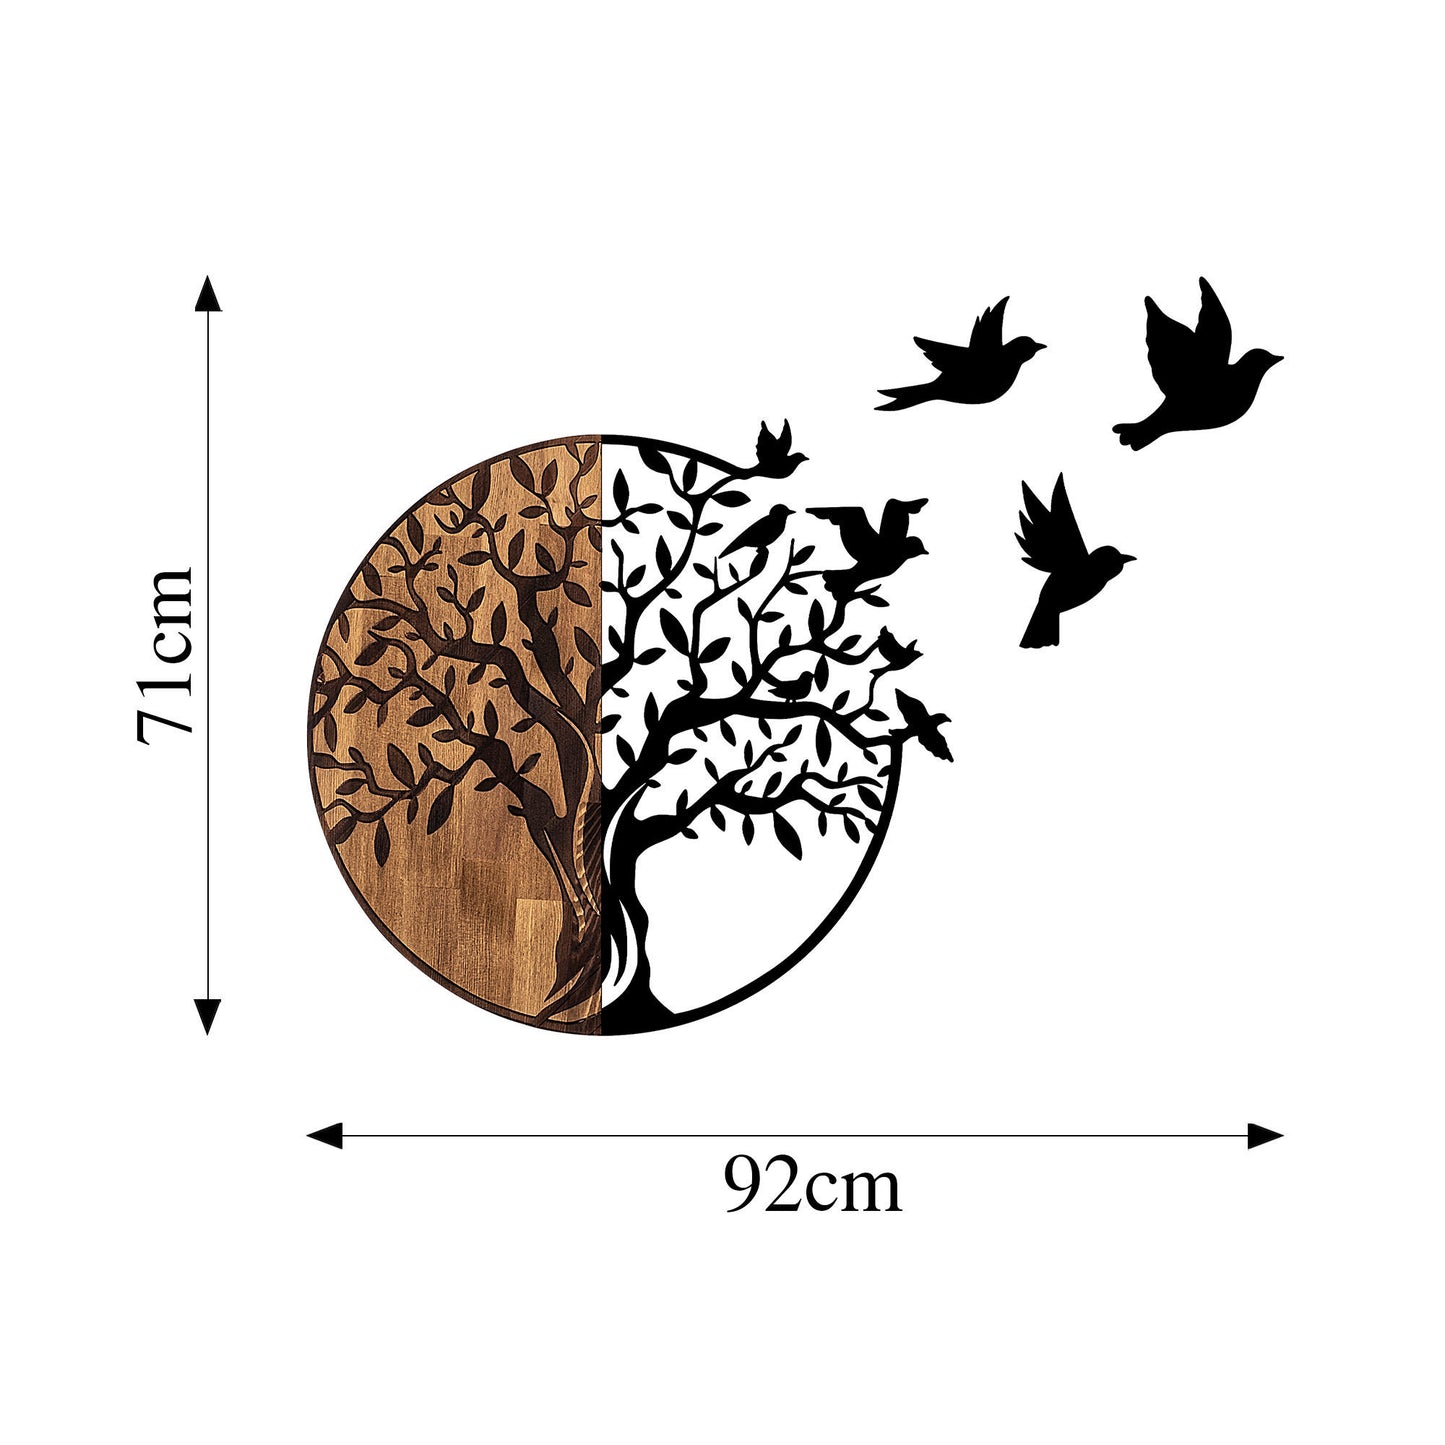 Træ og fugle - 322 - Dekorativt trævægstilbehør